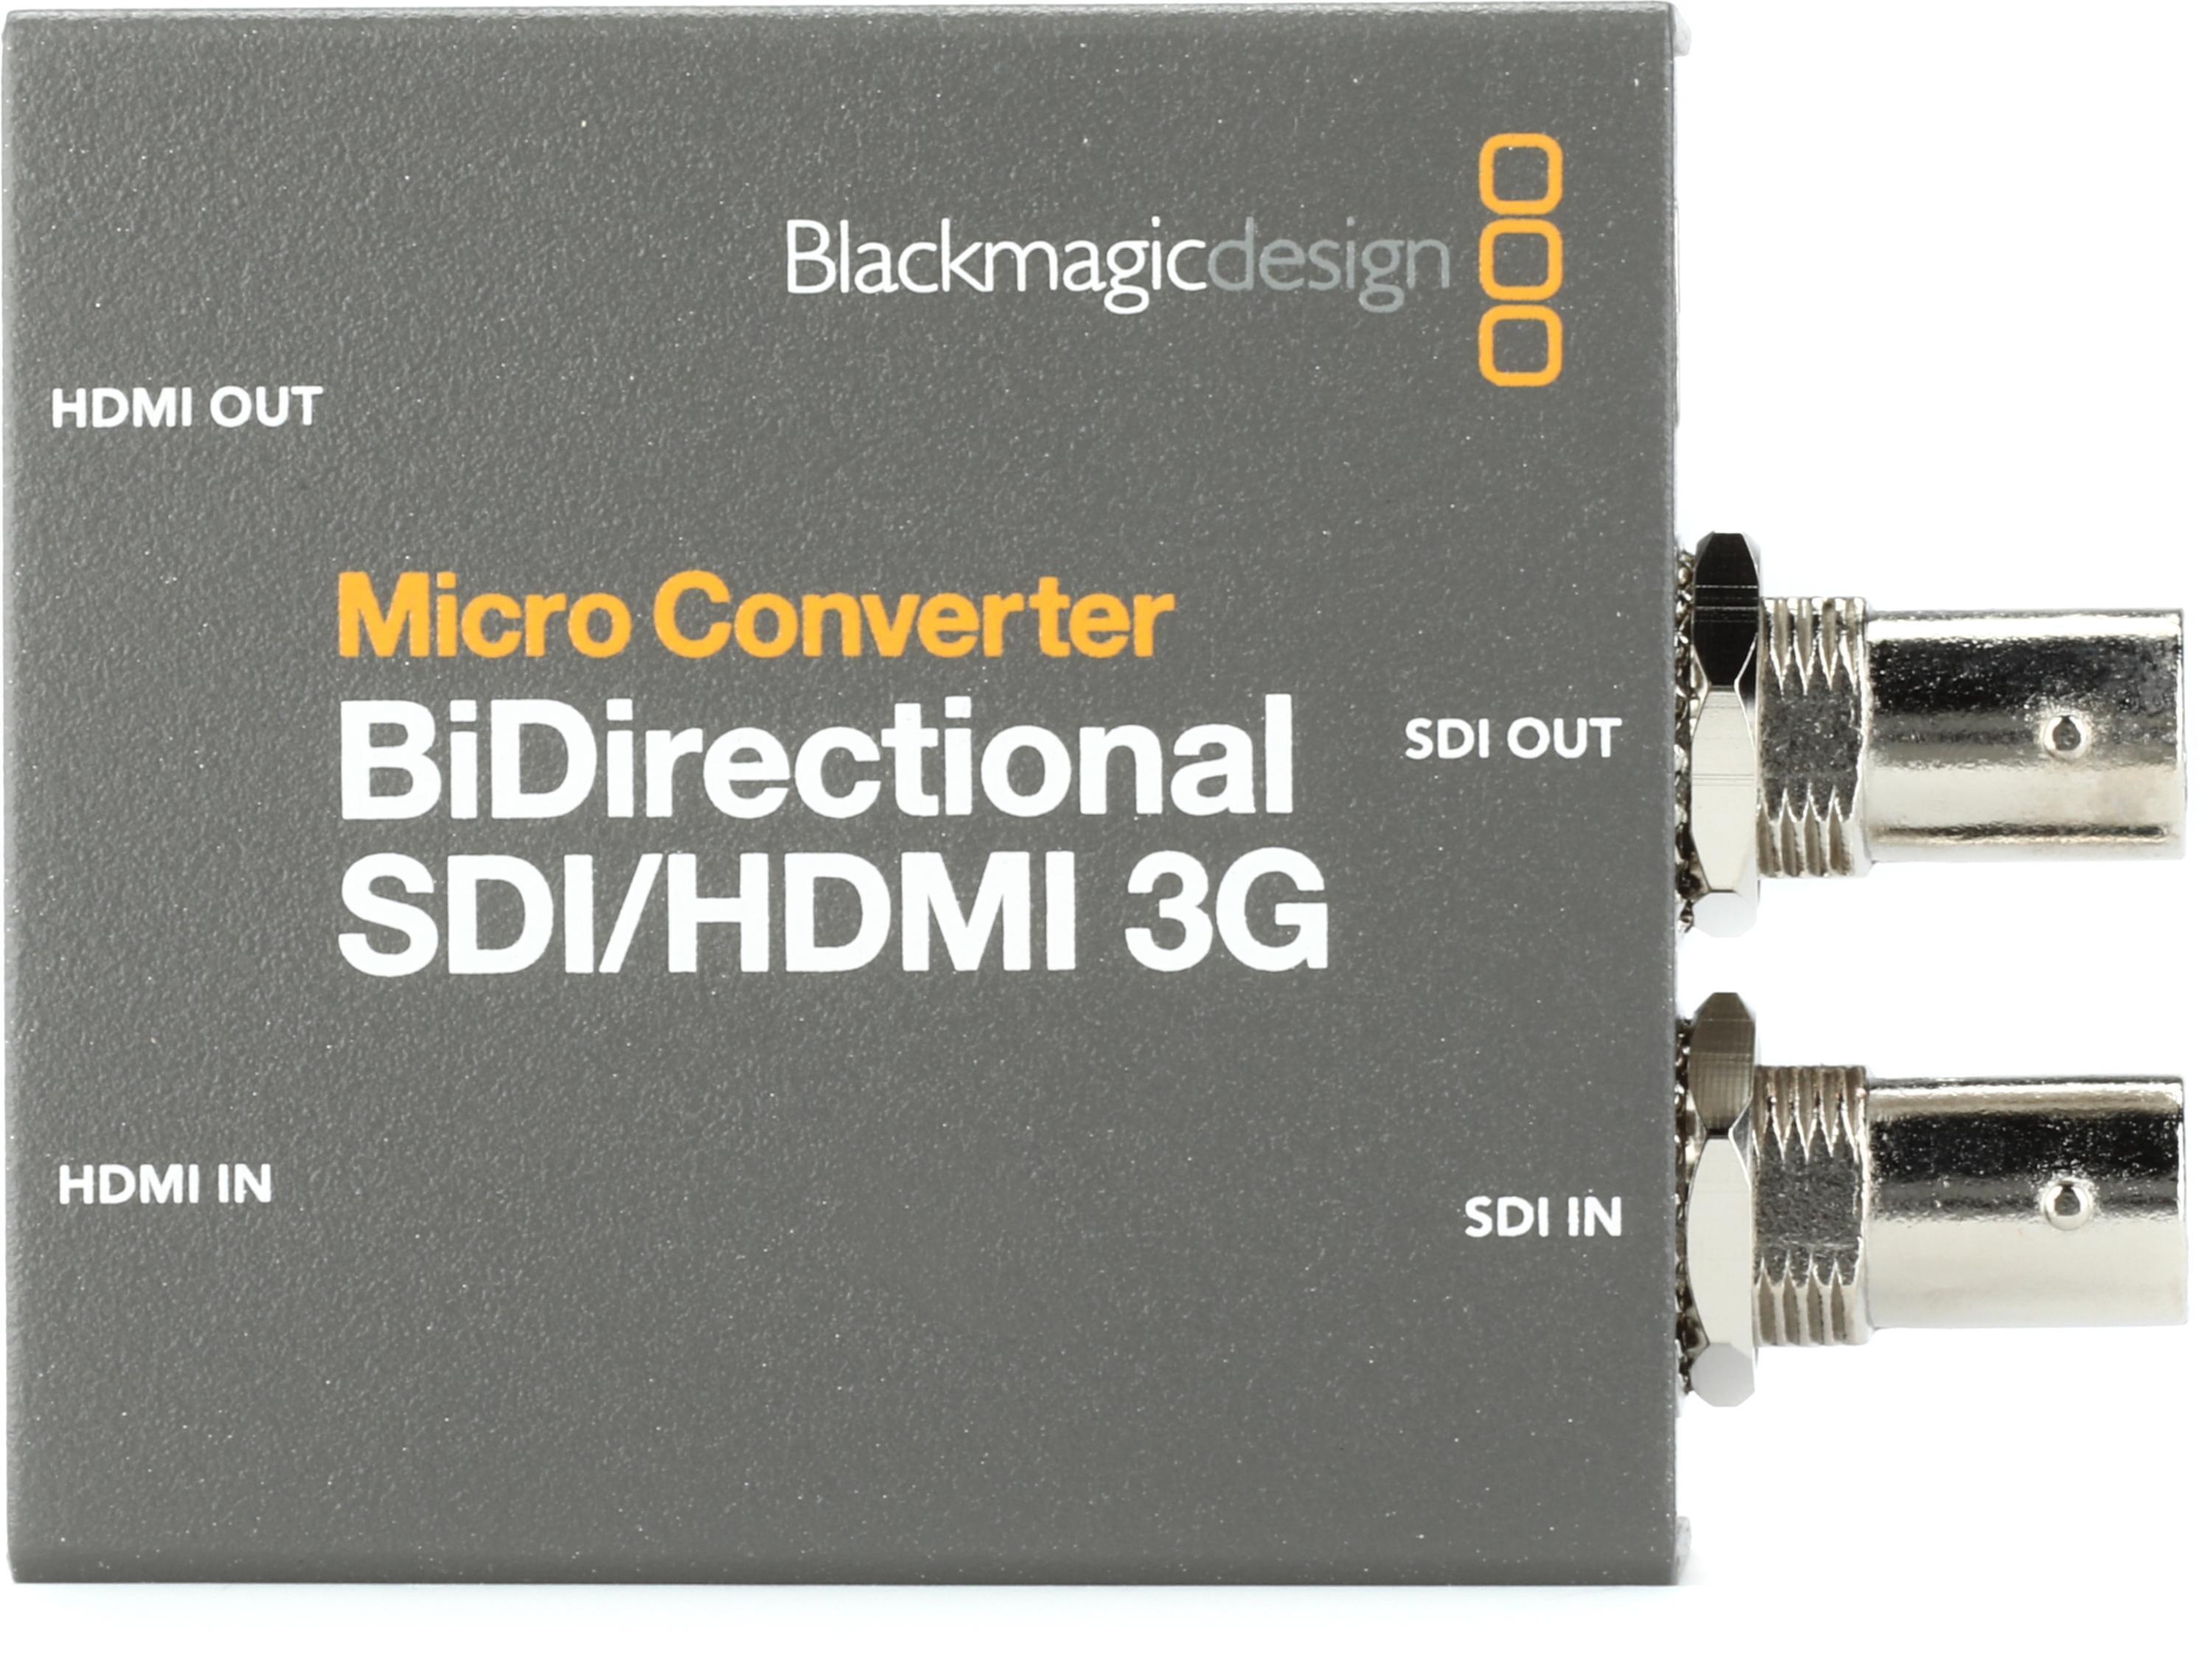 Blackmagic Design Bidirectional SDI/HDMI 3G Micro Converter